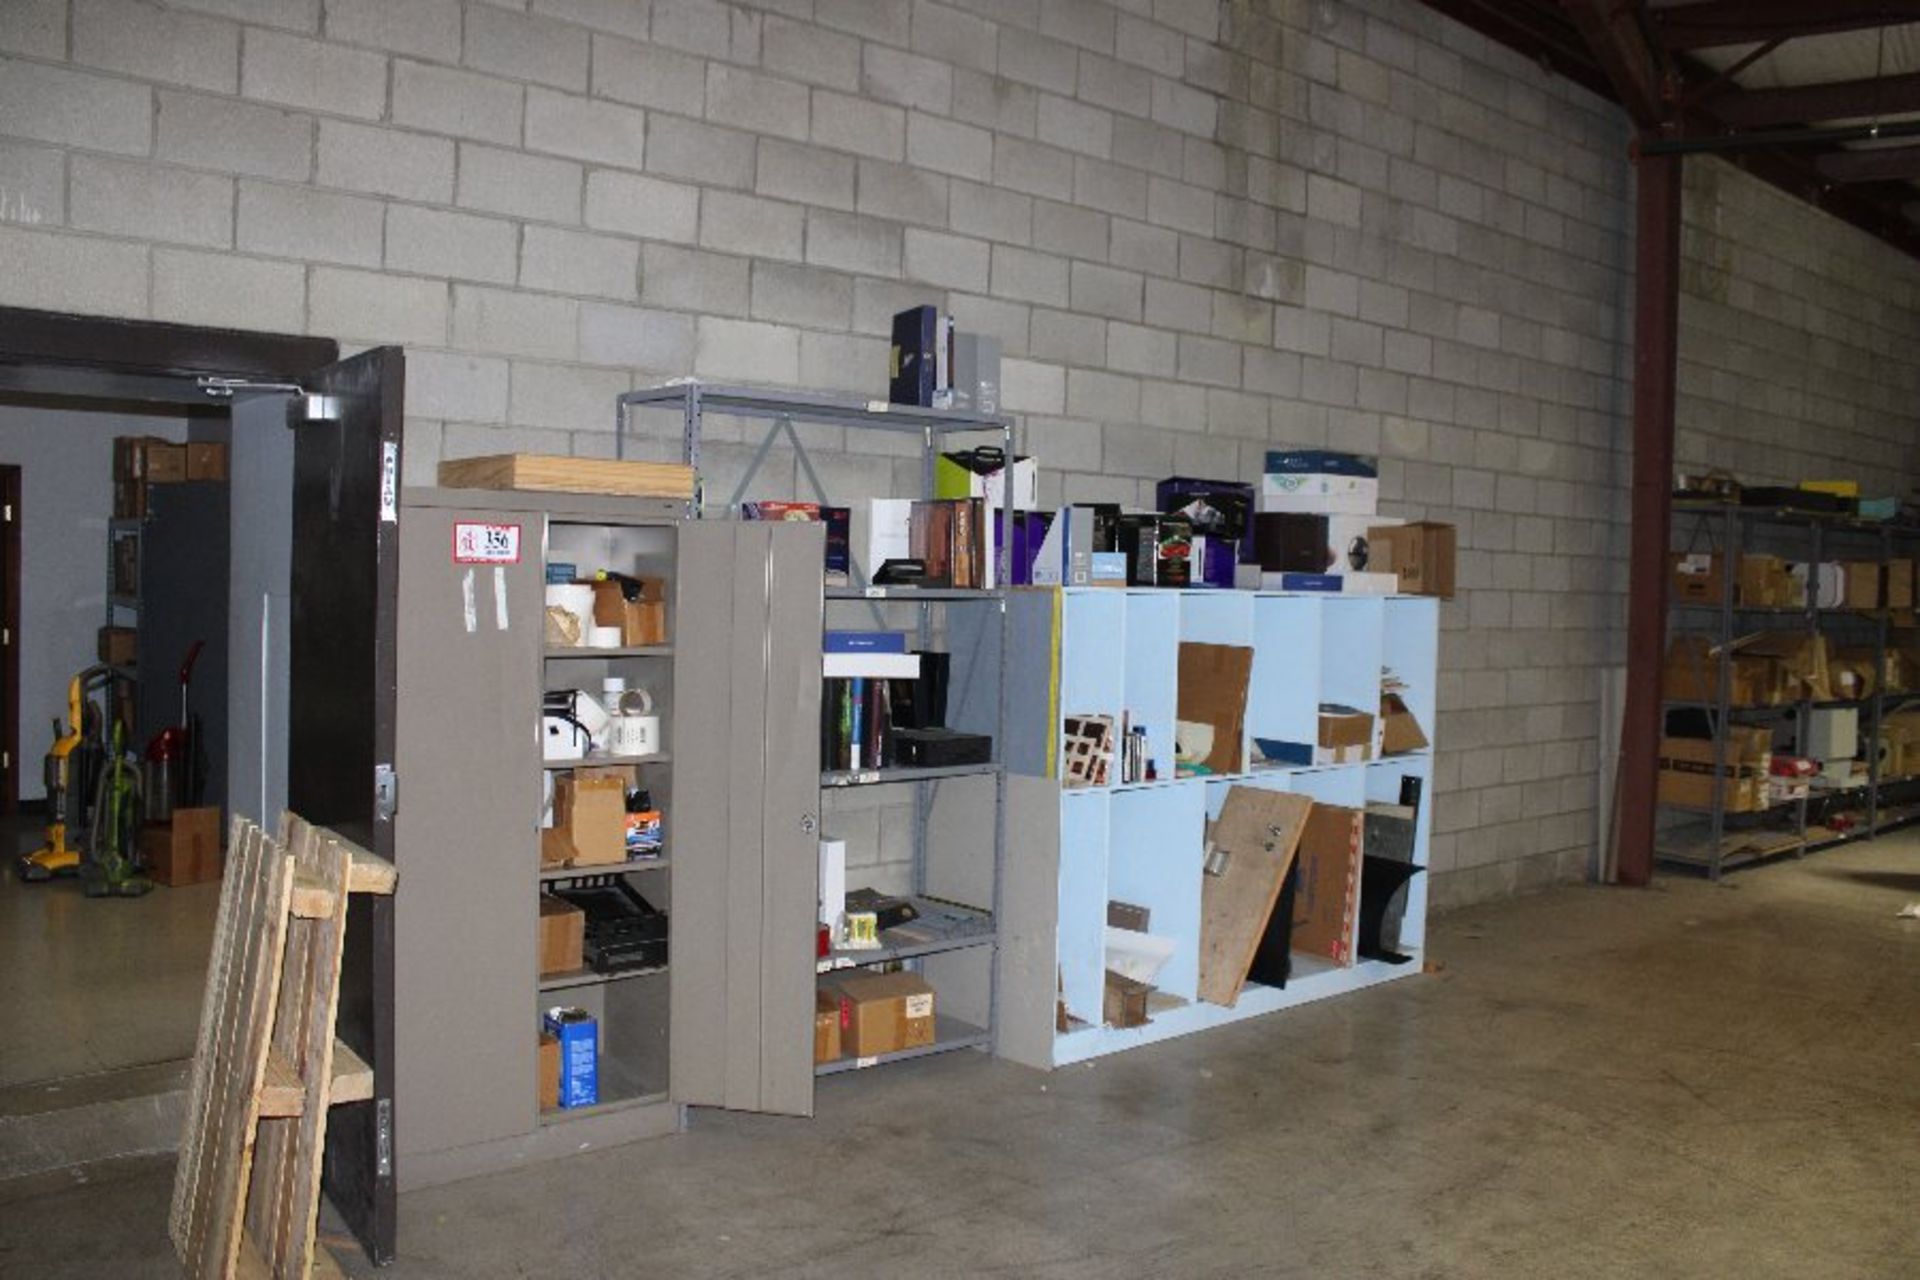 2 Door Metal Storage Cabinets (5) Sections of Adjustable Metal Shelving (1) Wooden Shelf w/